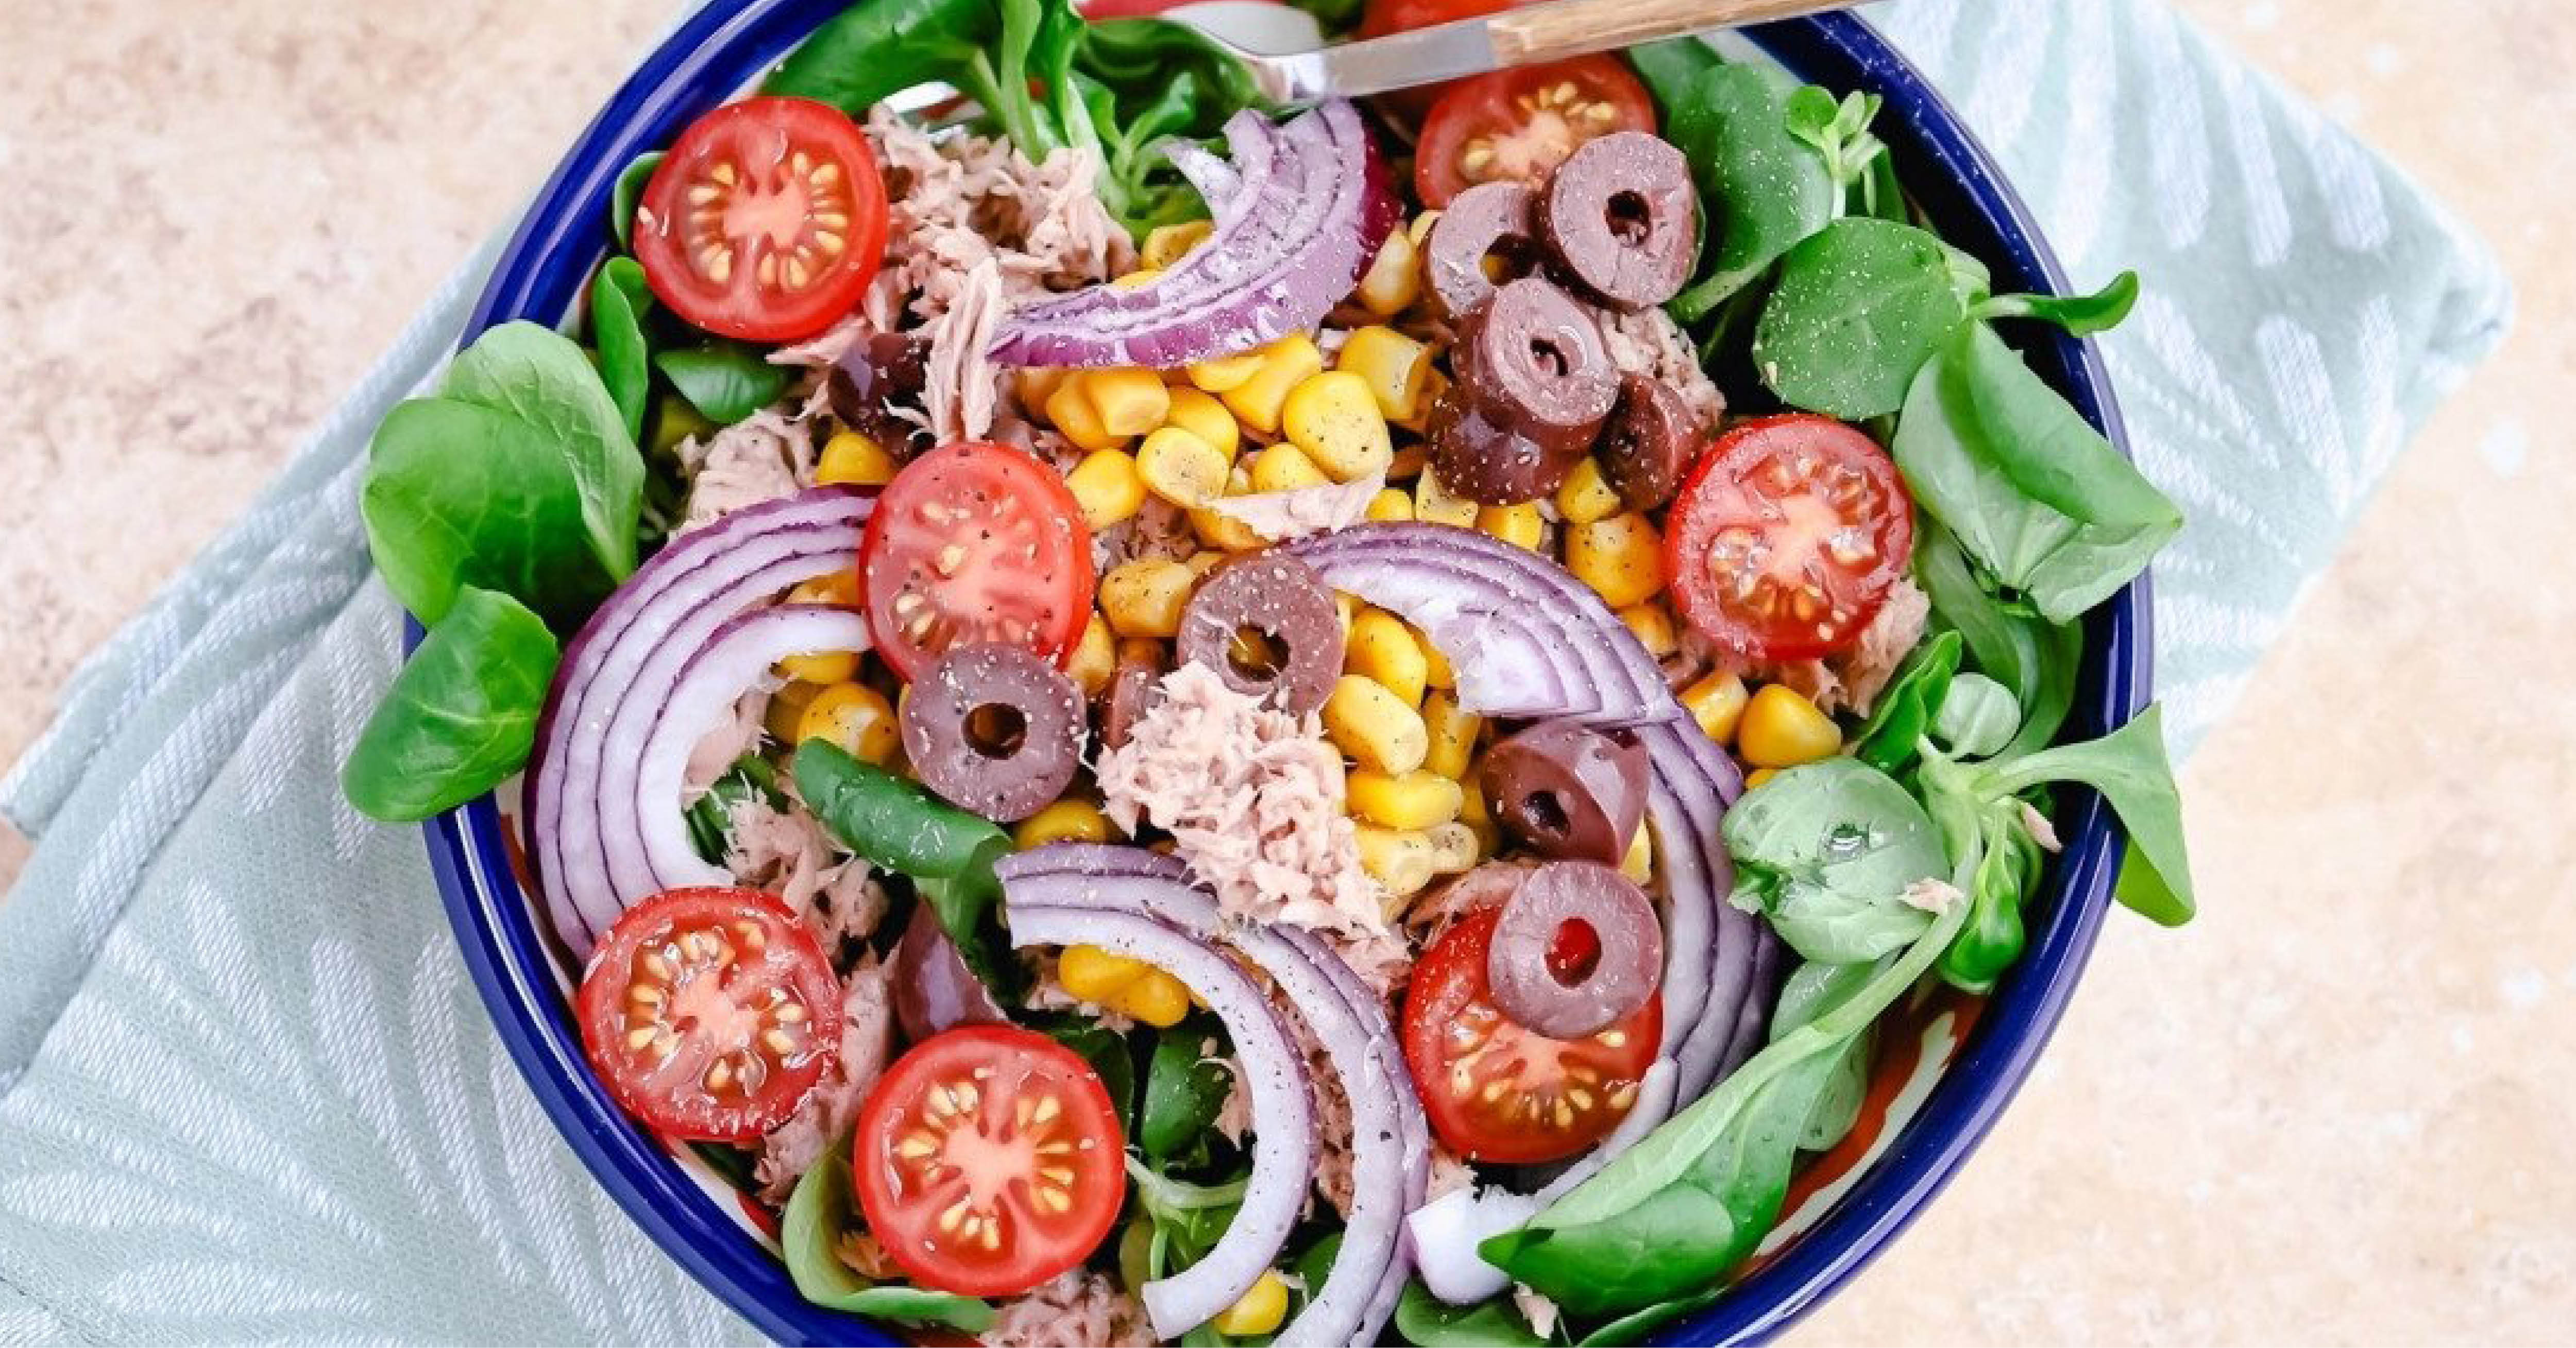 Salade met tonijn, maïs & olijven (344 kcal)